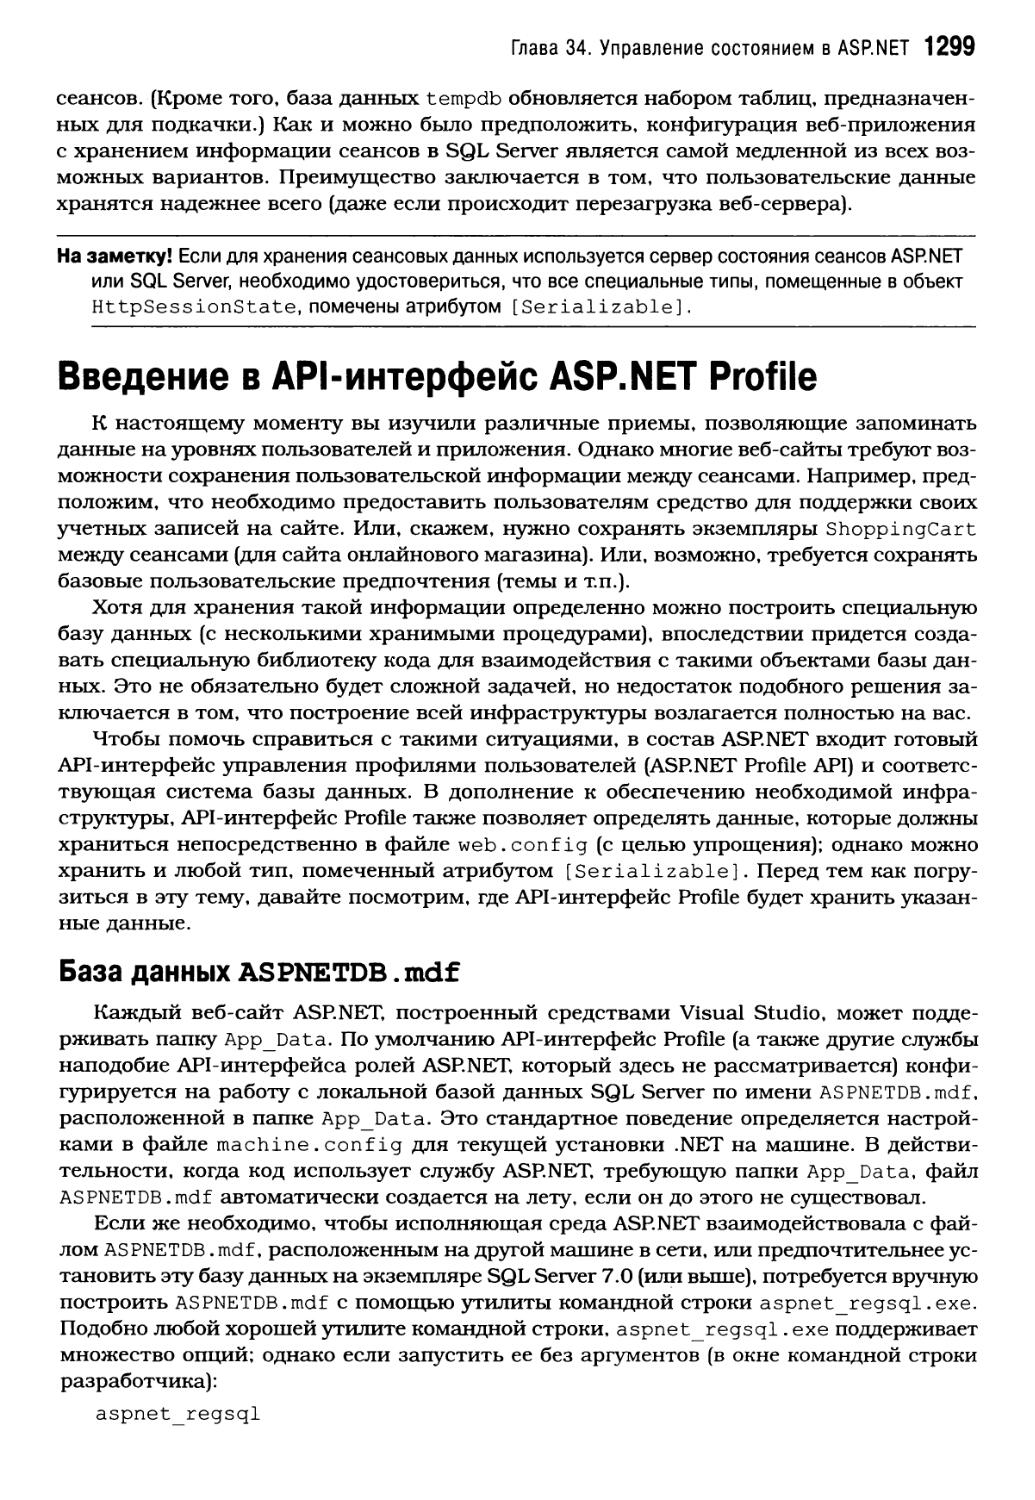 Введение в API-интерфейс ASP. NET Profile